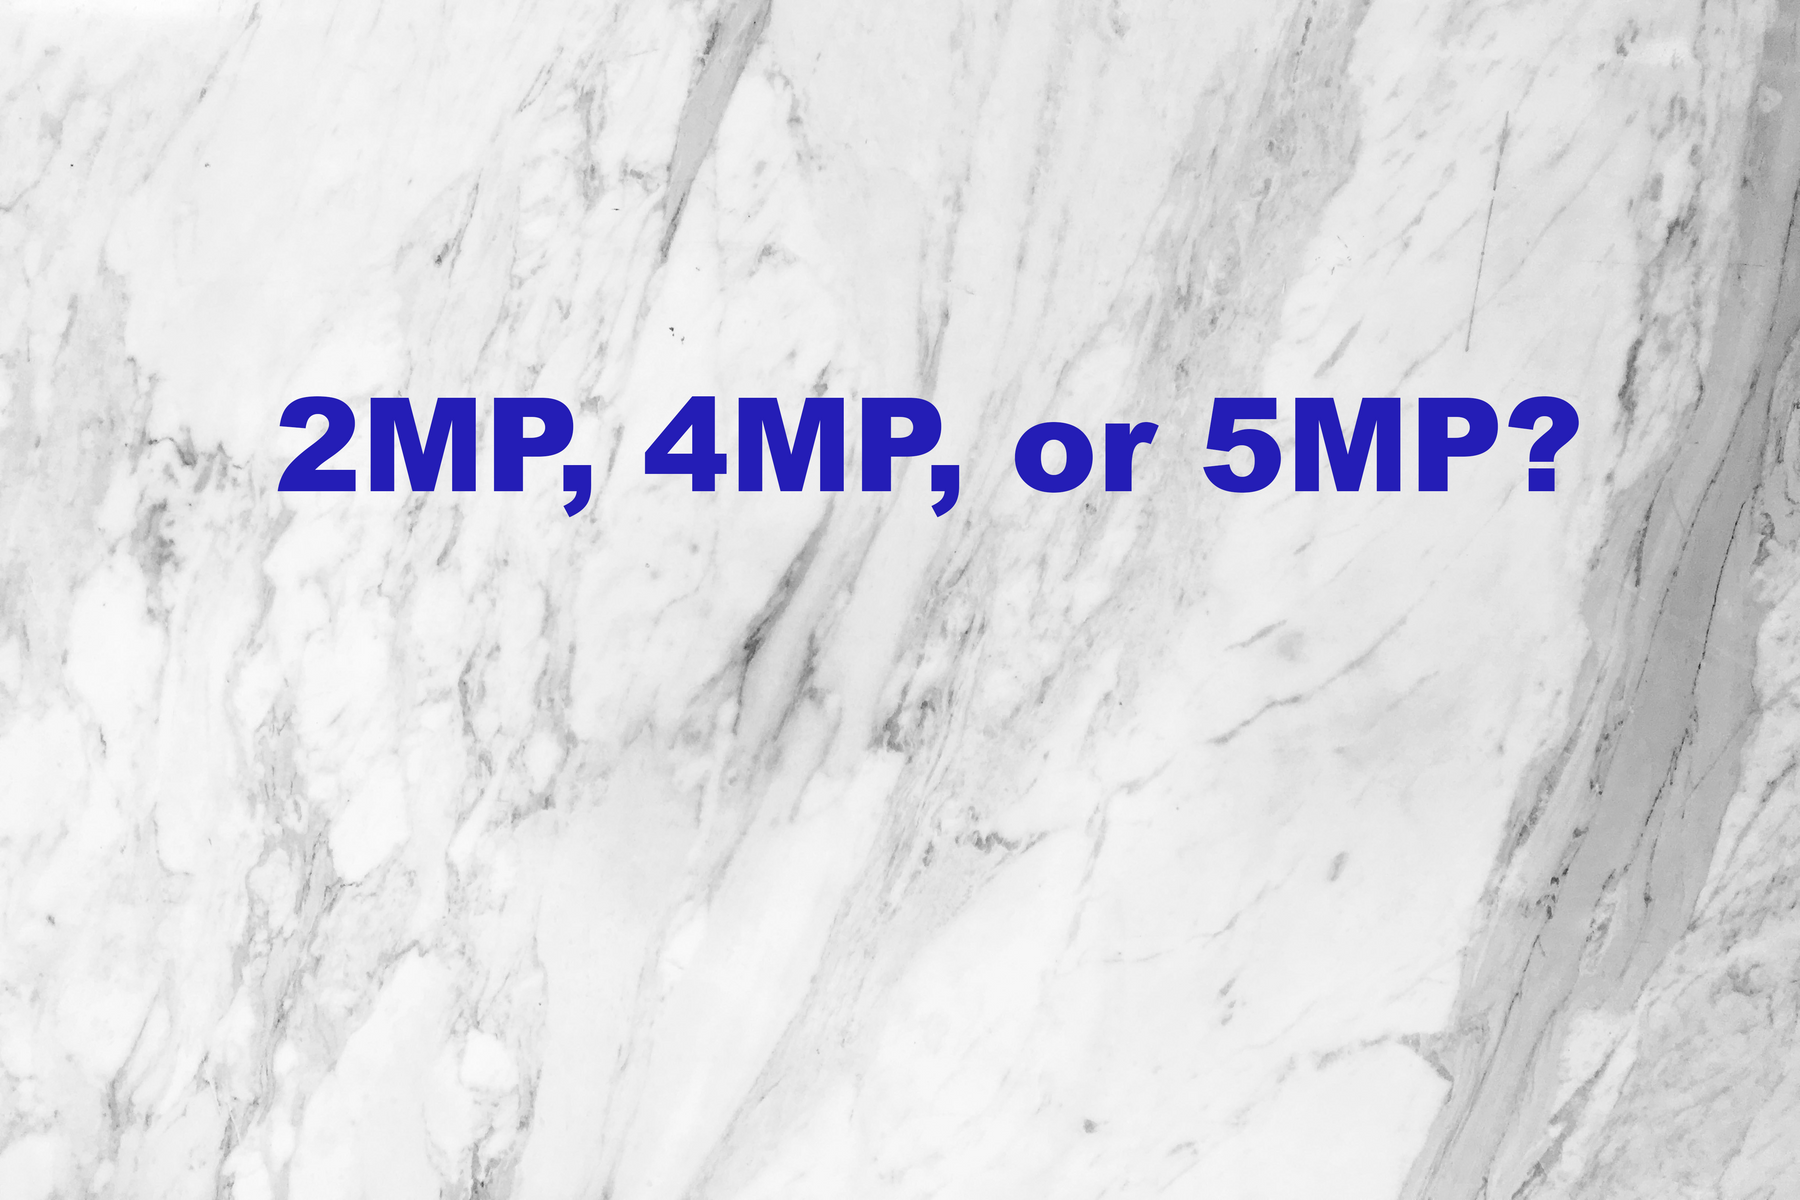 Compare 2MP, 4MP, 5MP, and 8MP resolutions